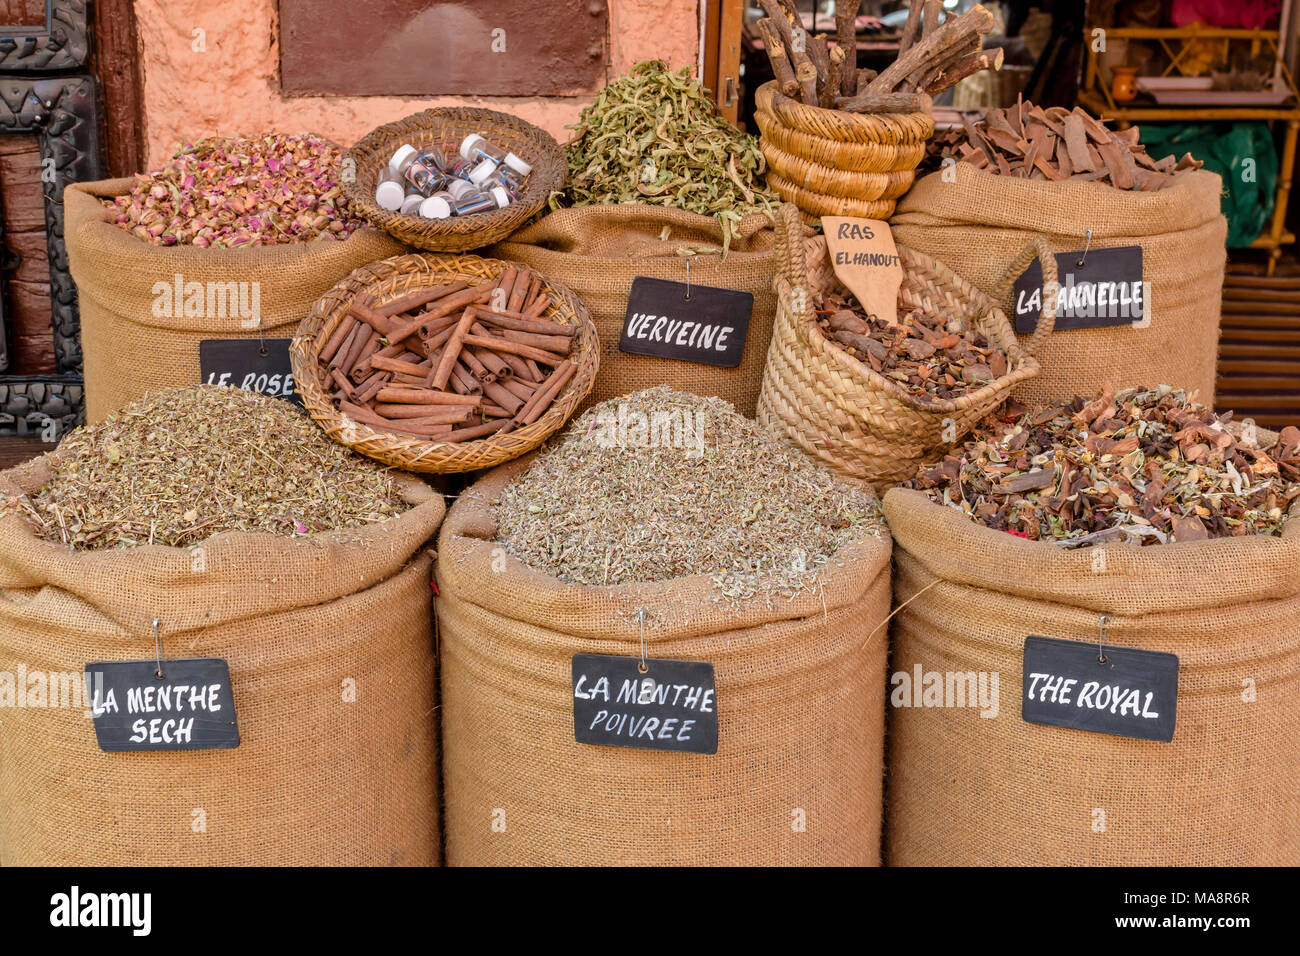 Il Marocco Marrakech Piazza Jemaa El Fna Medina e souk negozi e bancarelle di spezie in sacchi con etichette Foto Stock